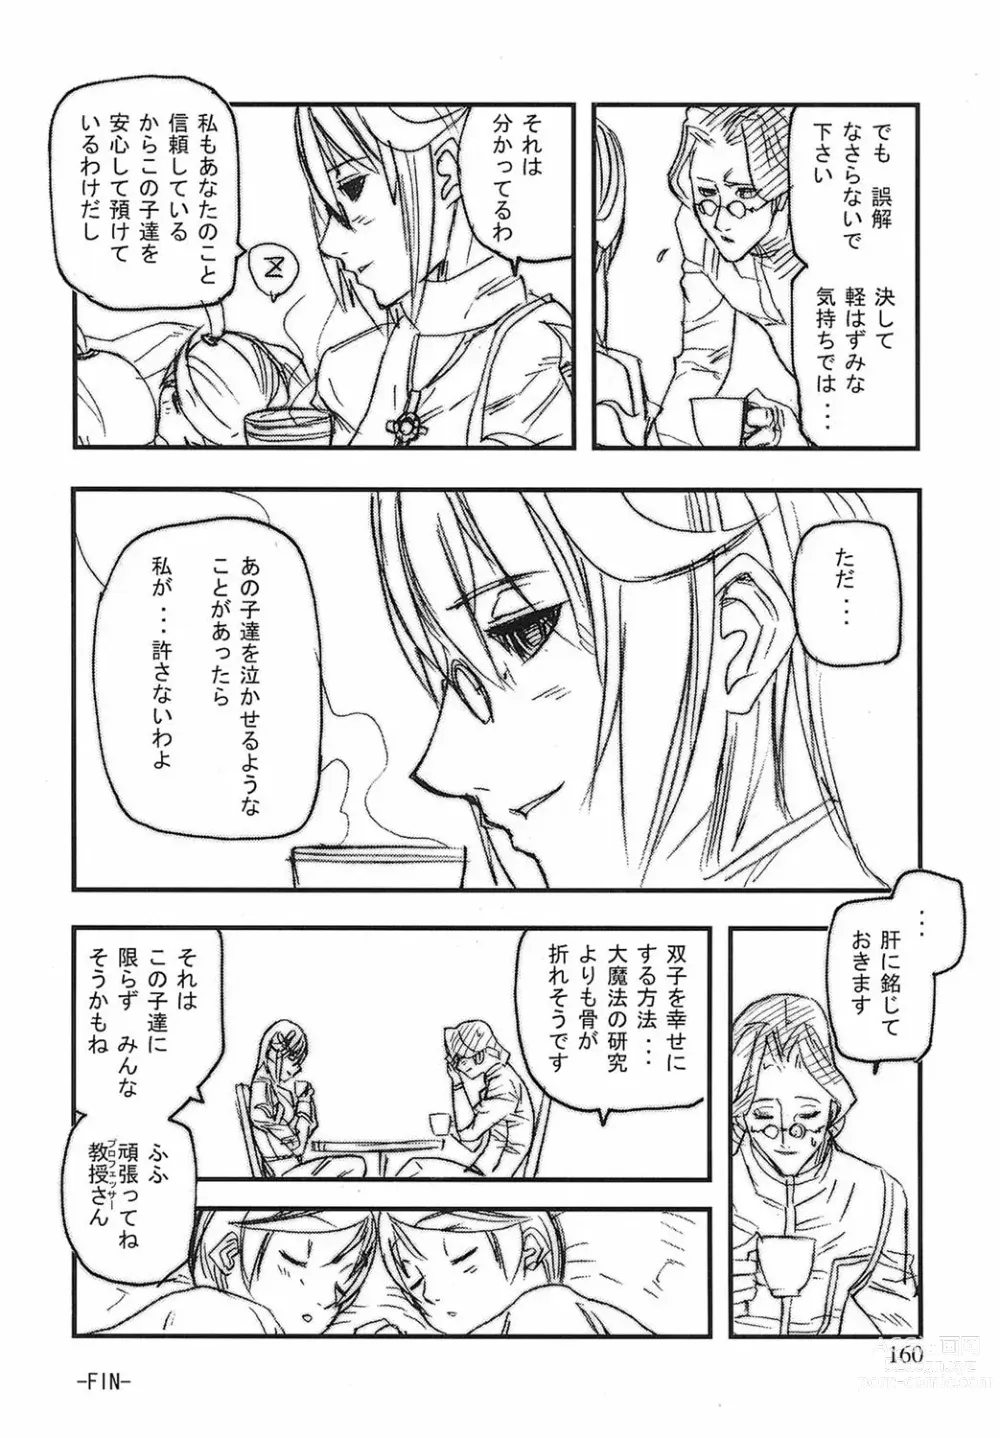 Page 157 of manga Game Holic